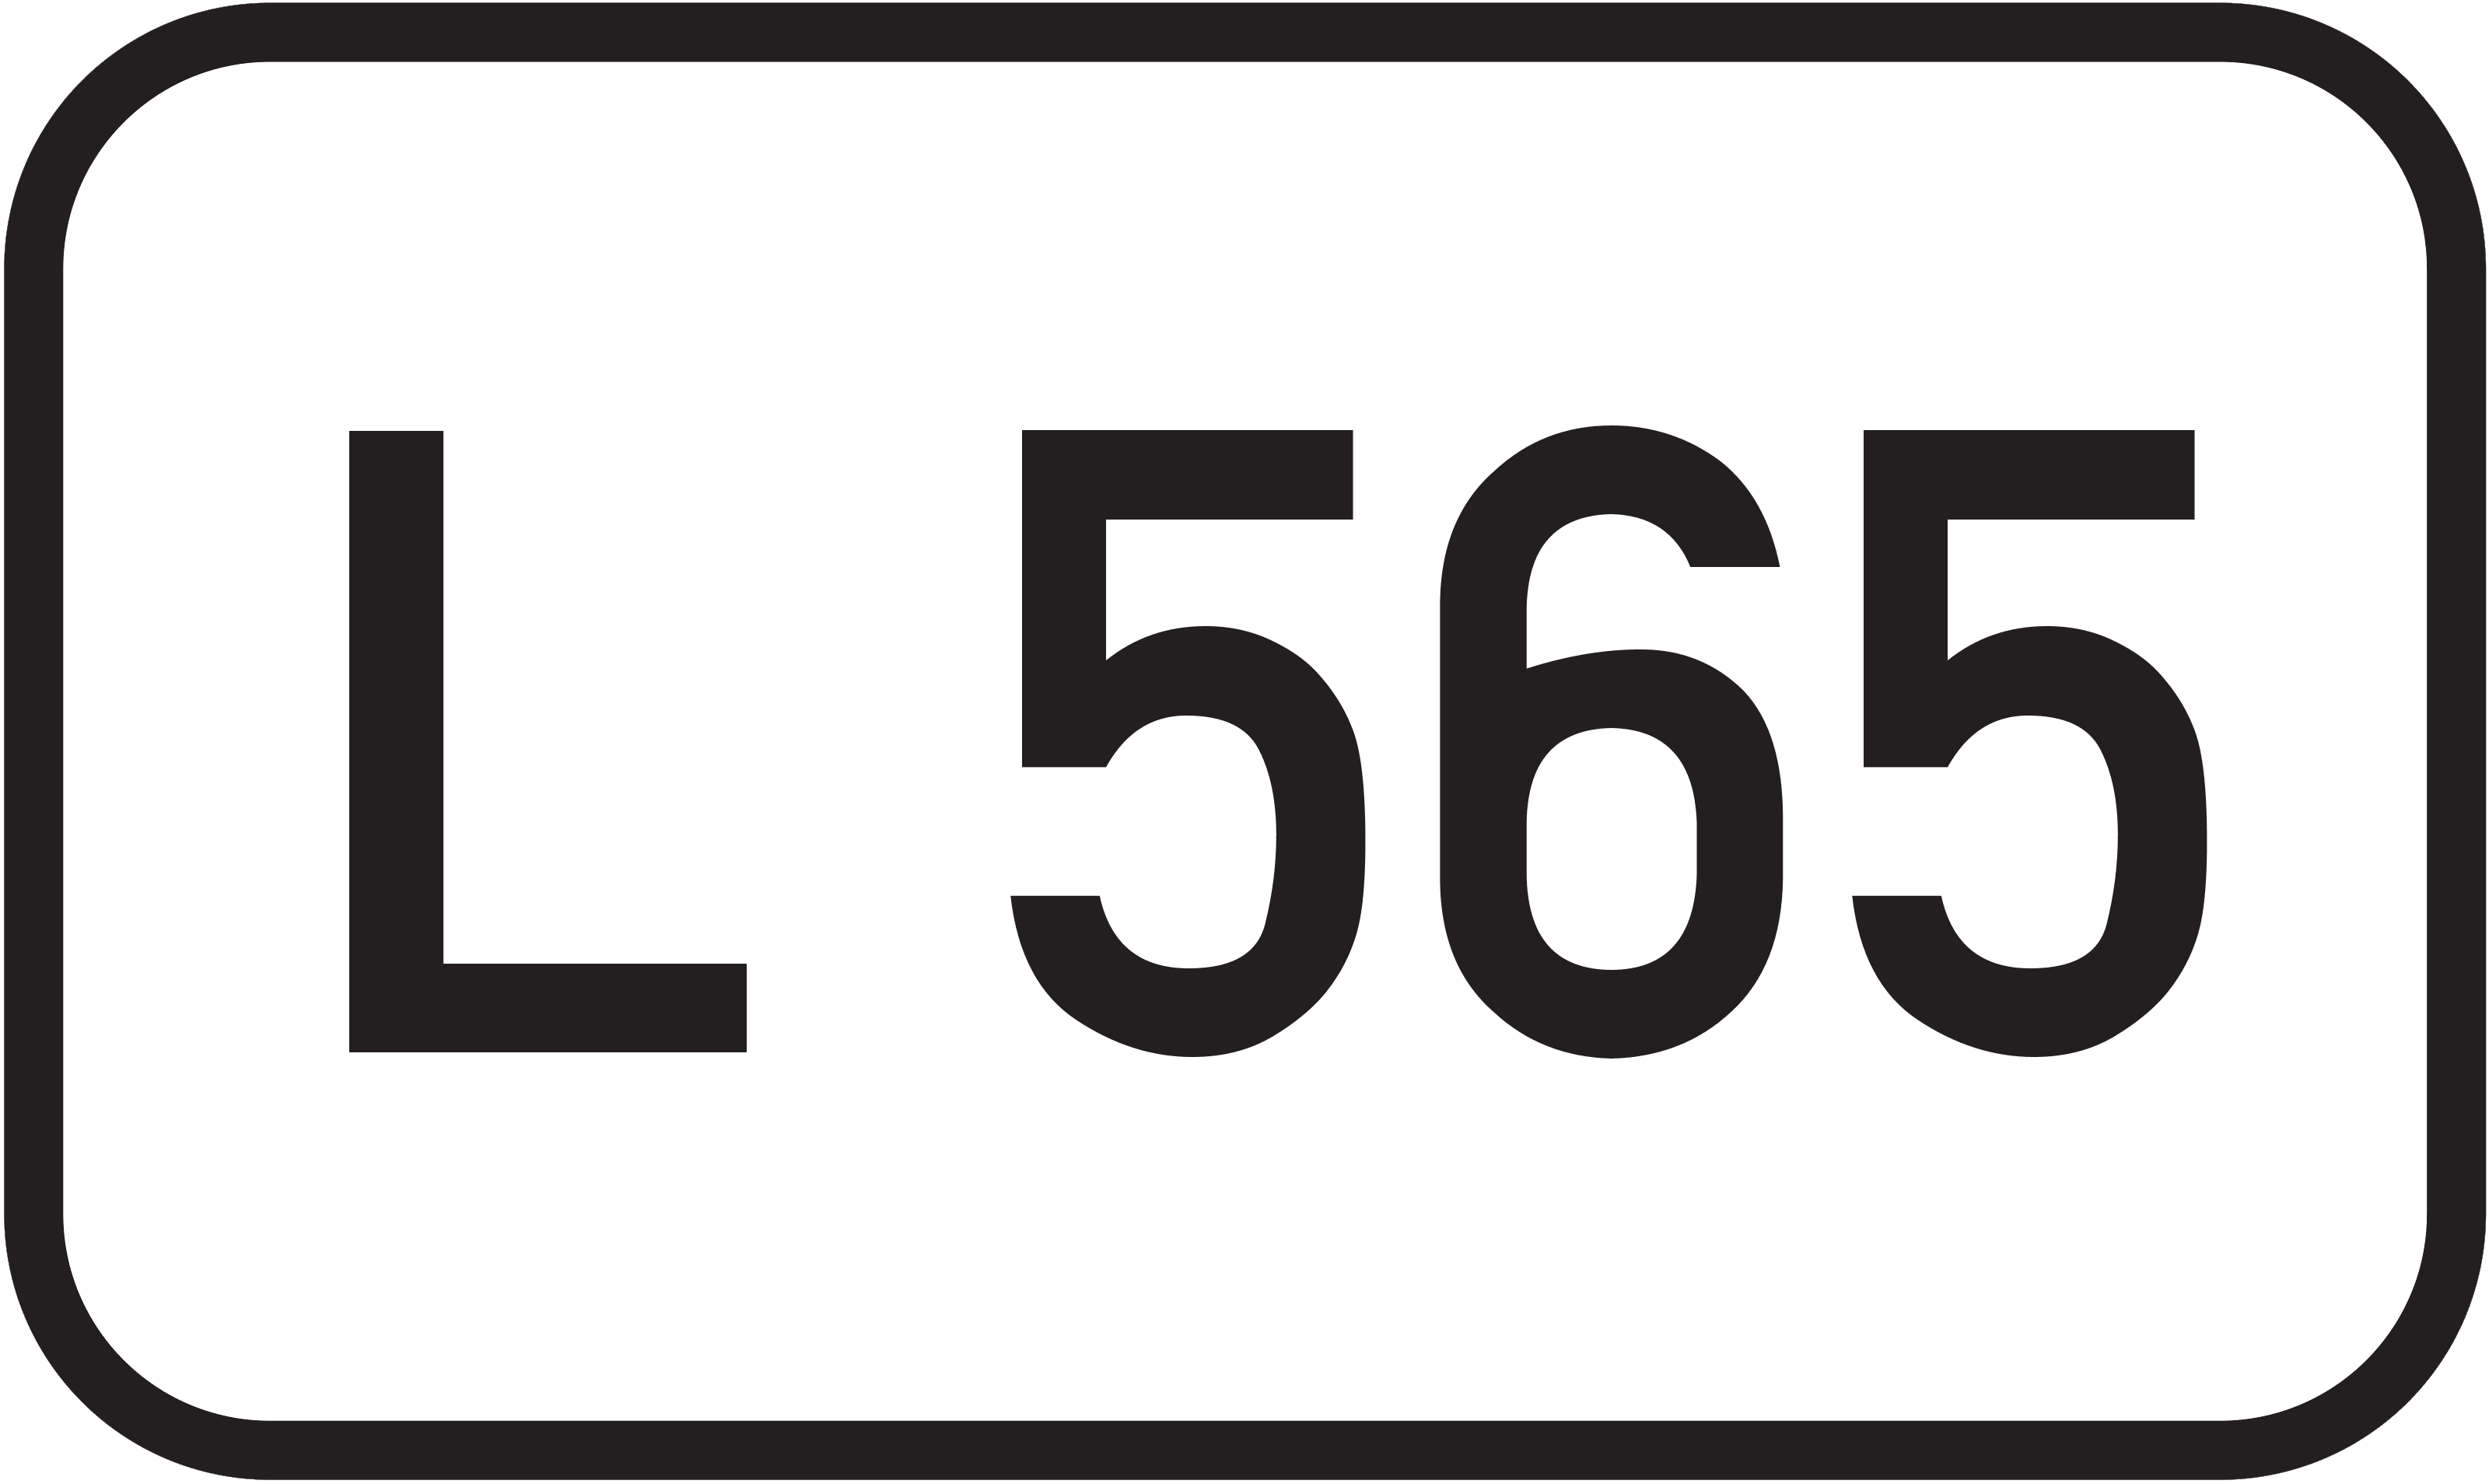 Landesstraße L 565